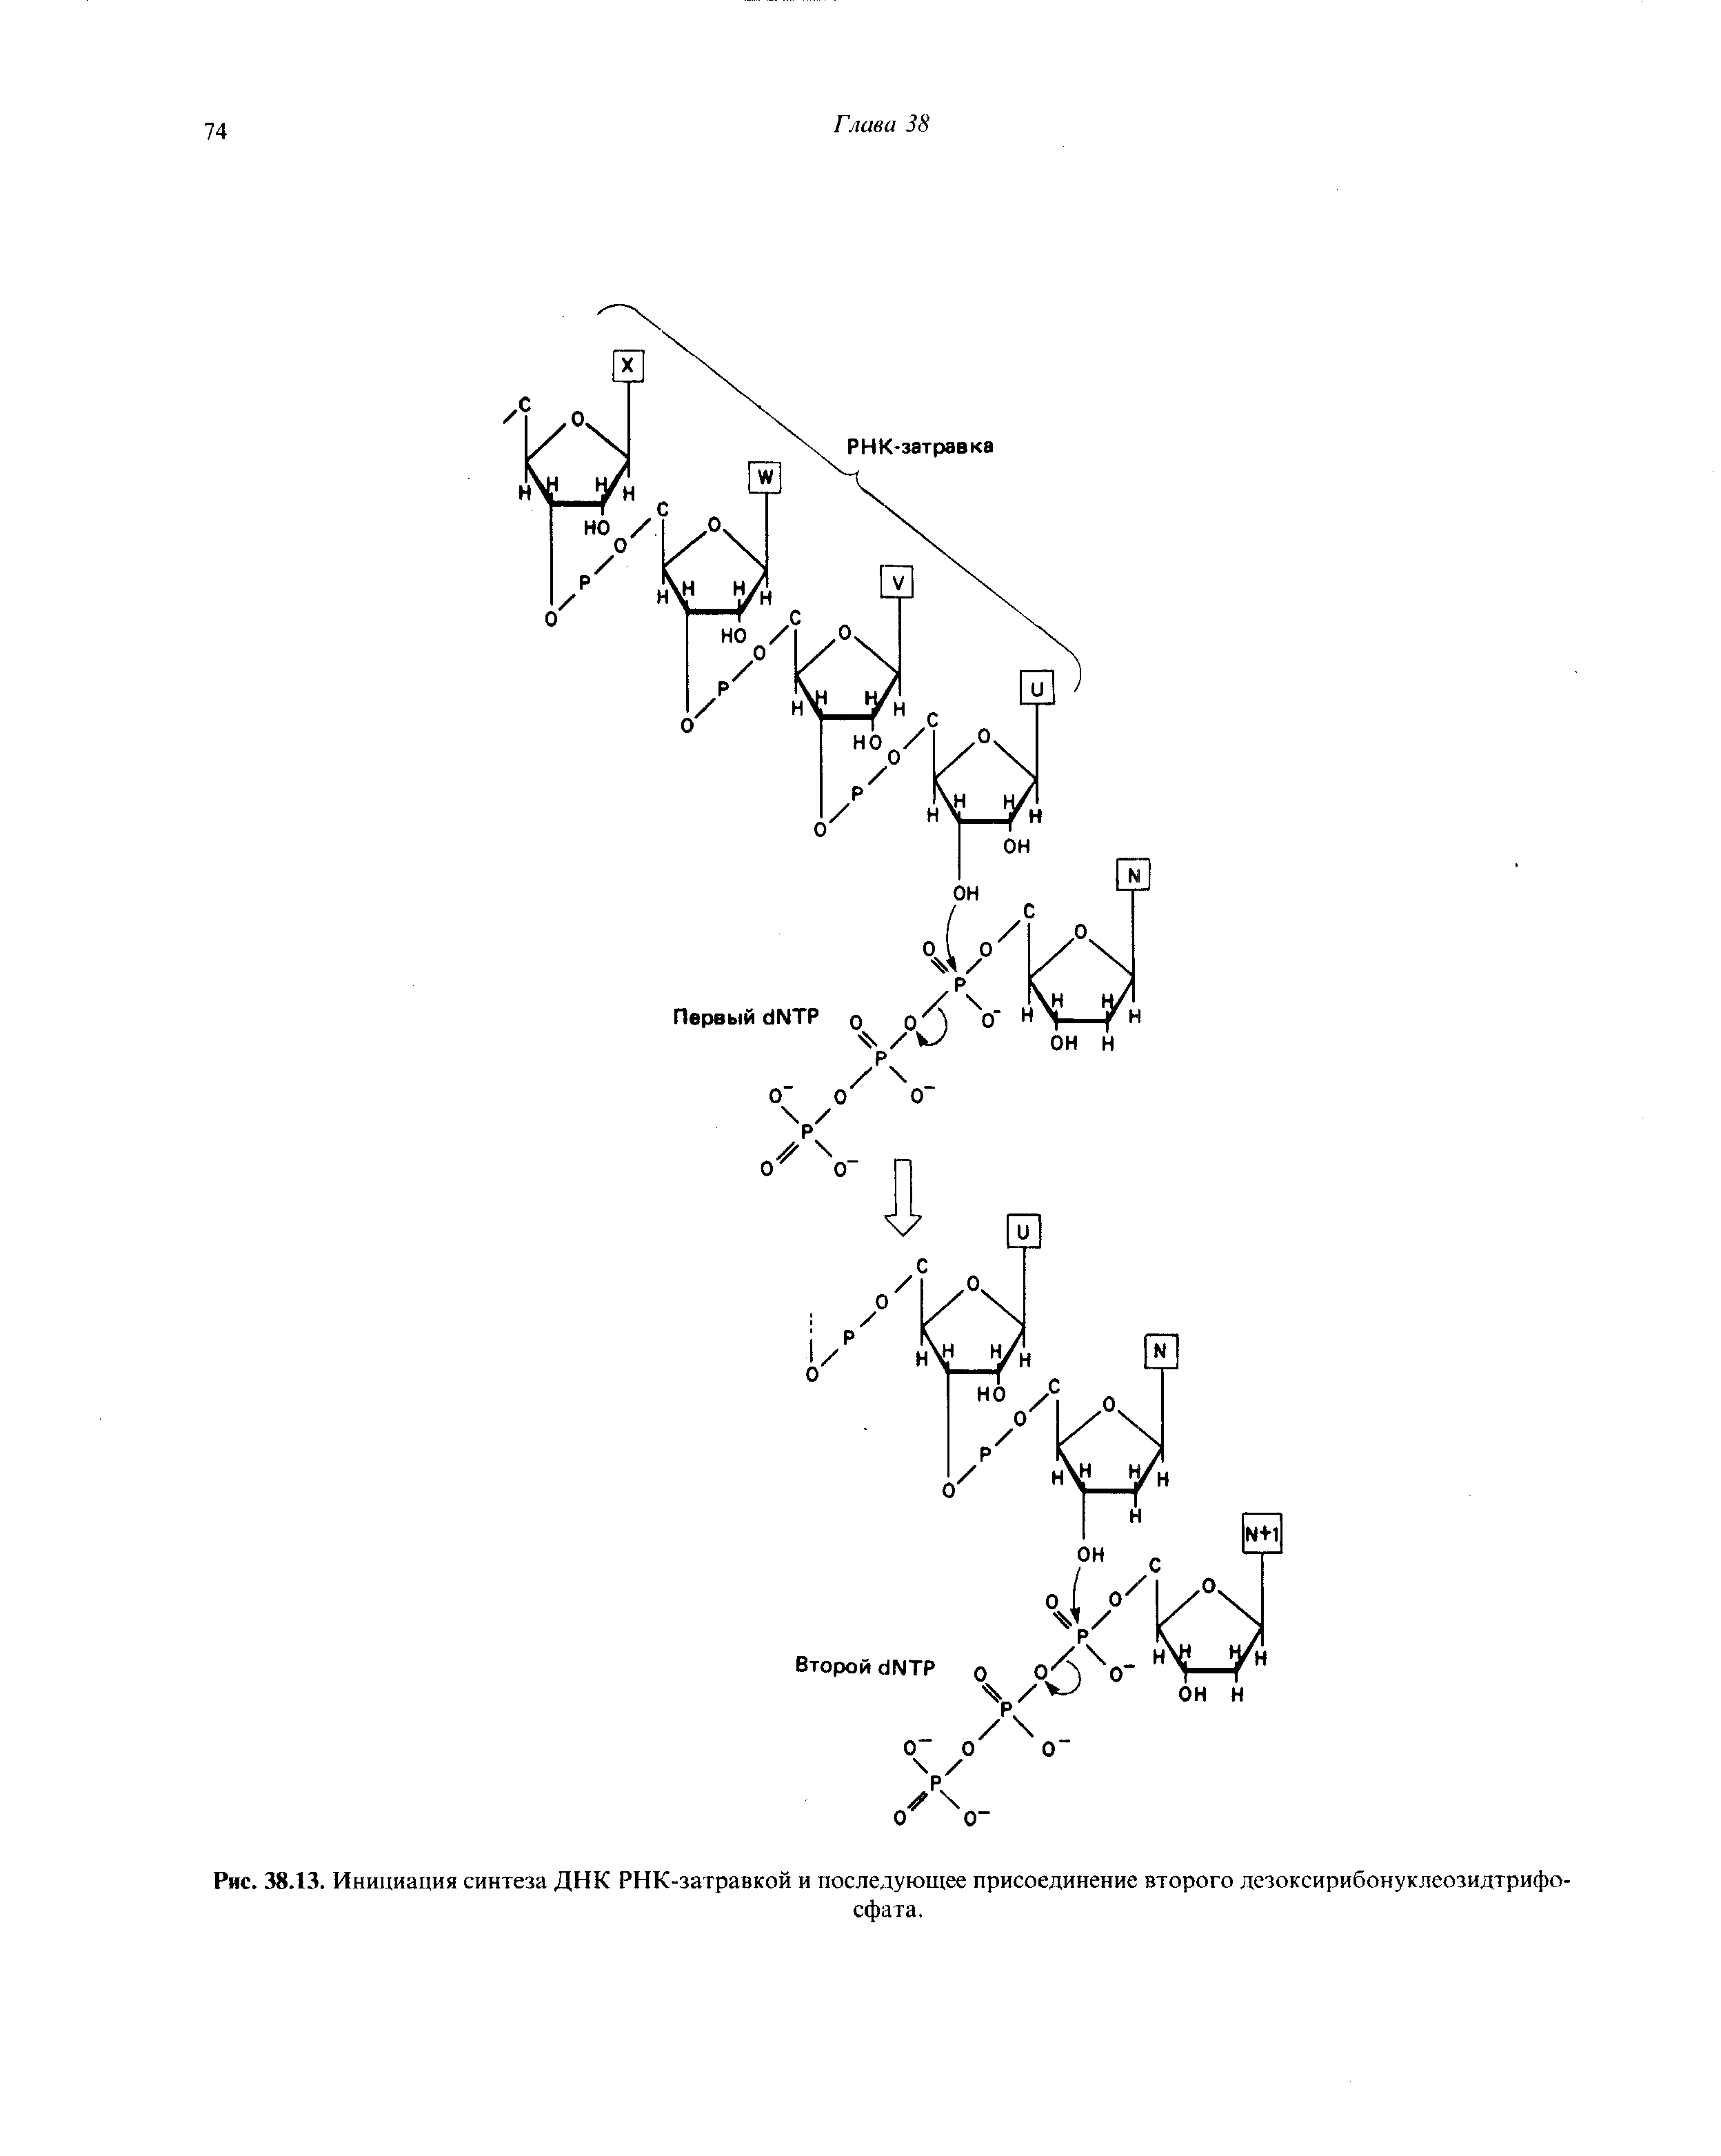 Рис. 38.13. Инициация синтеза ДНК РНК-затравкой и последующее присоединение второго дезоксирибонуклеозидтрифосфата.